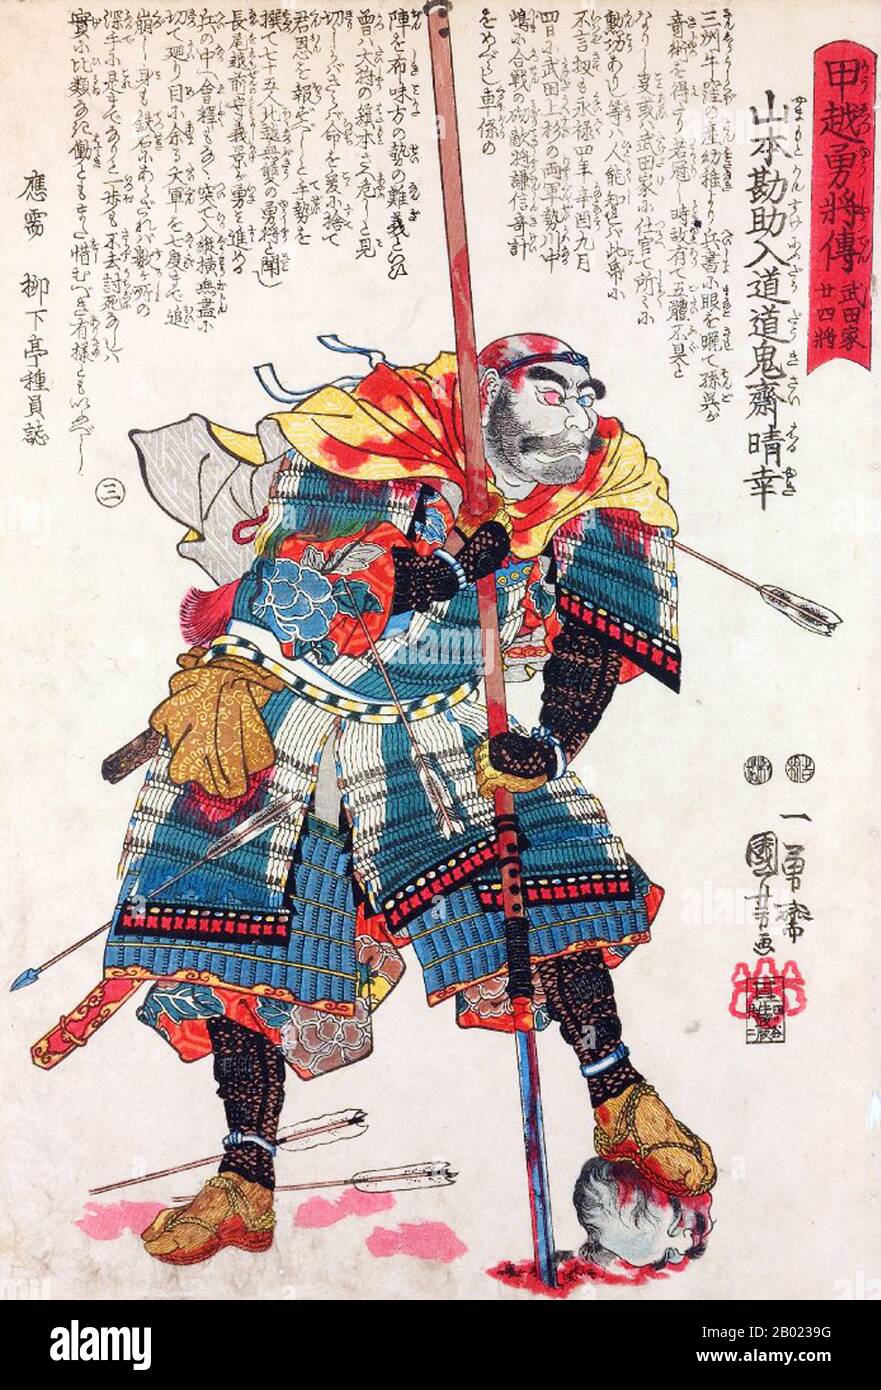 Yamamoto Kansuke (山本 勘助, 1501 - 18. Oktober 1561) war ein japanischer Samurai des 16. Jahrhunderts, der zu den vertrauenswürdigsten achtundzwanzig Generalen von Takeda Shingen gehörte. Auch bekannt unter seinem offiziellen Namen Haruyuki (晴幸) war er ein genialer Stratege und ist vor allem für seinen Plan bekannt, der zum Sieg in der vierten Schlacht von Kawanakajima gegen Uesugi Kenshin führte. Kansuke lebte jedoch nie, um seinen Plan erfolgreich zu sehen; als er dachte, dass er gescheitert sei, lud er kopfballweit in die Reihen des Feindes und starb im Kampf. Aus Richtung "geschichten Mutiger Generale der Provinzen Echigo und Kai" (Kôetsu yûshô den, 甲越勇將傳): Stockfoto